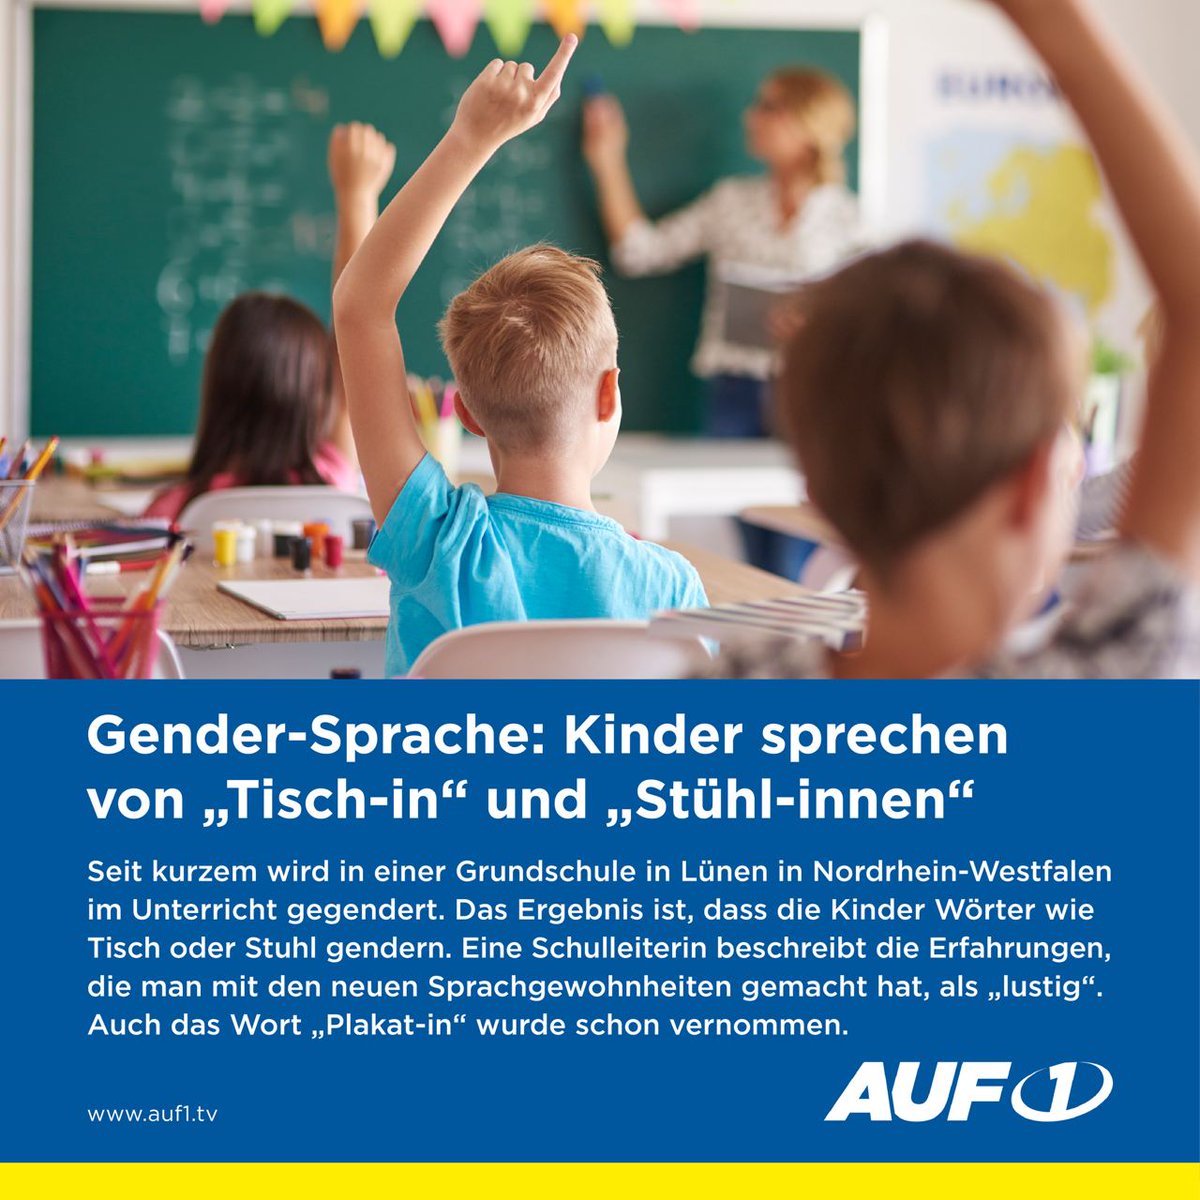 Gender-Sprache: Kinder sprechen von „Tisch-In“ und „Stühl-innen“

Neuerdings wird an einer Grundschule in Nordrhein-Westfalen gegendert. Die Einführung des Genderns im Unterricht brachte vor allem für Kinder, die Deutsch als Zweitsprache lernen, eine enorme Herausforderung. So…